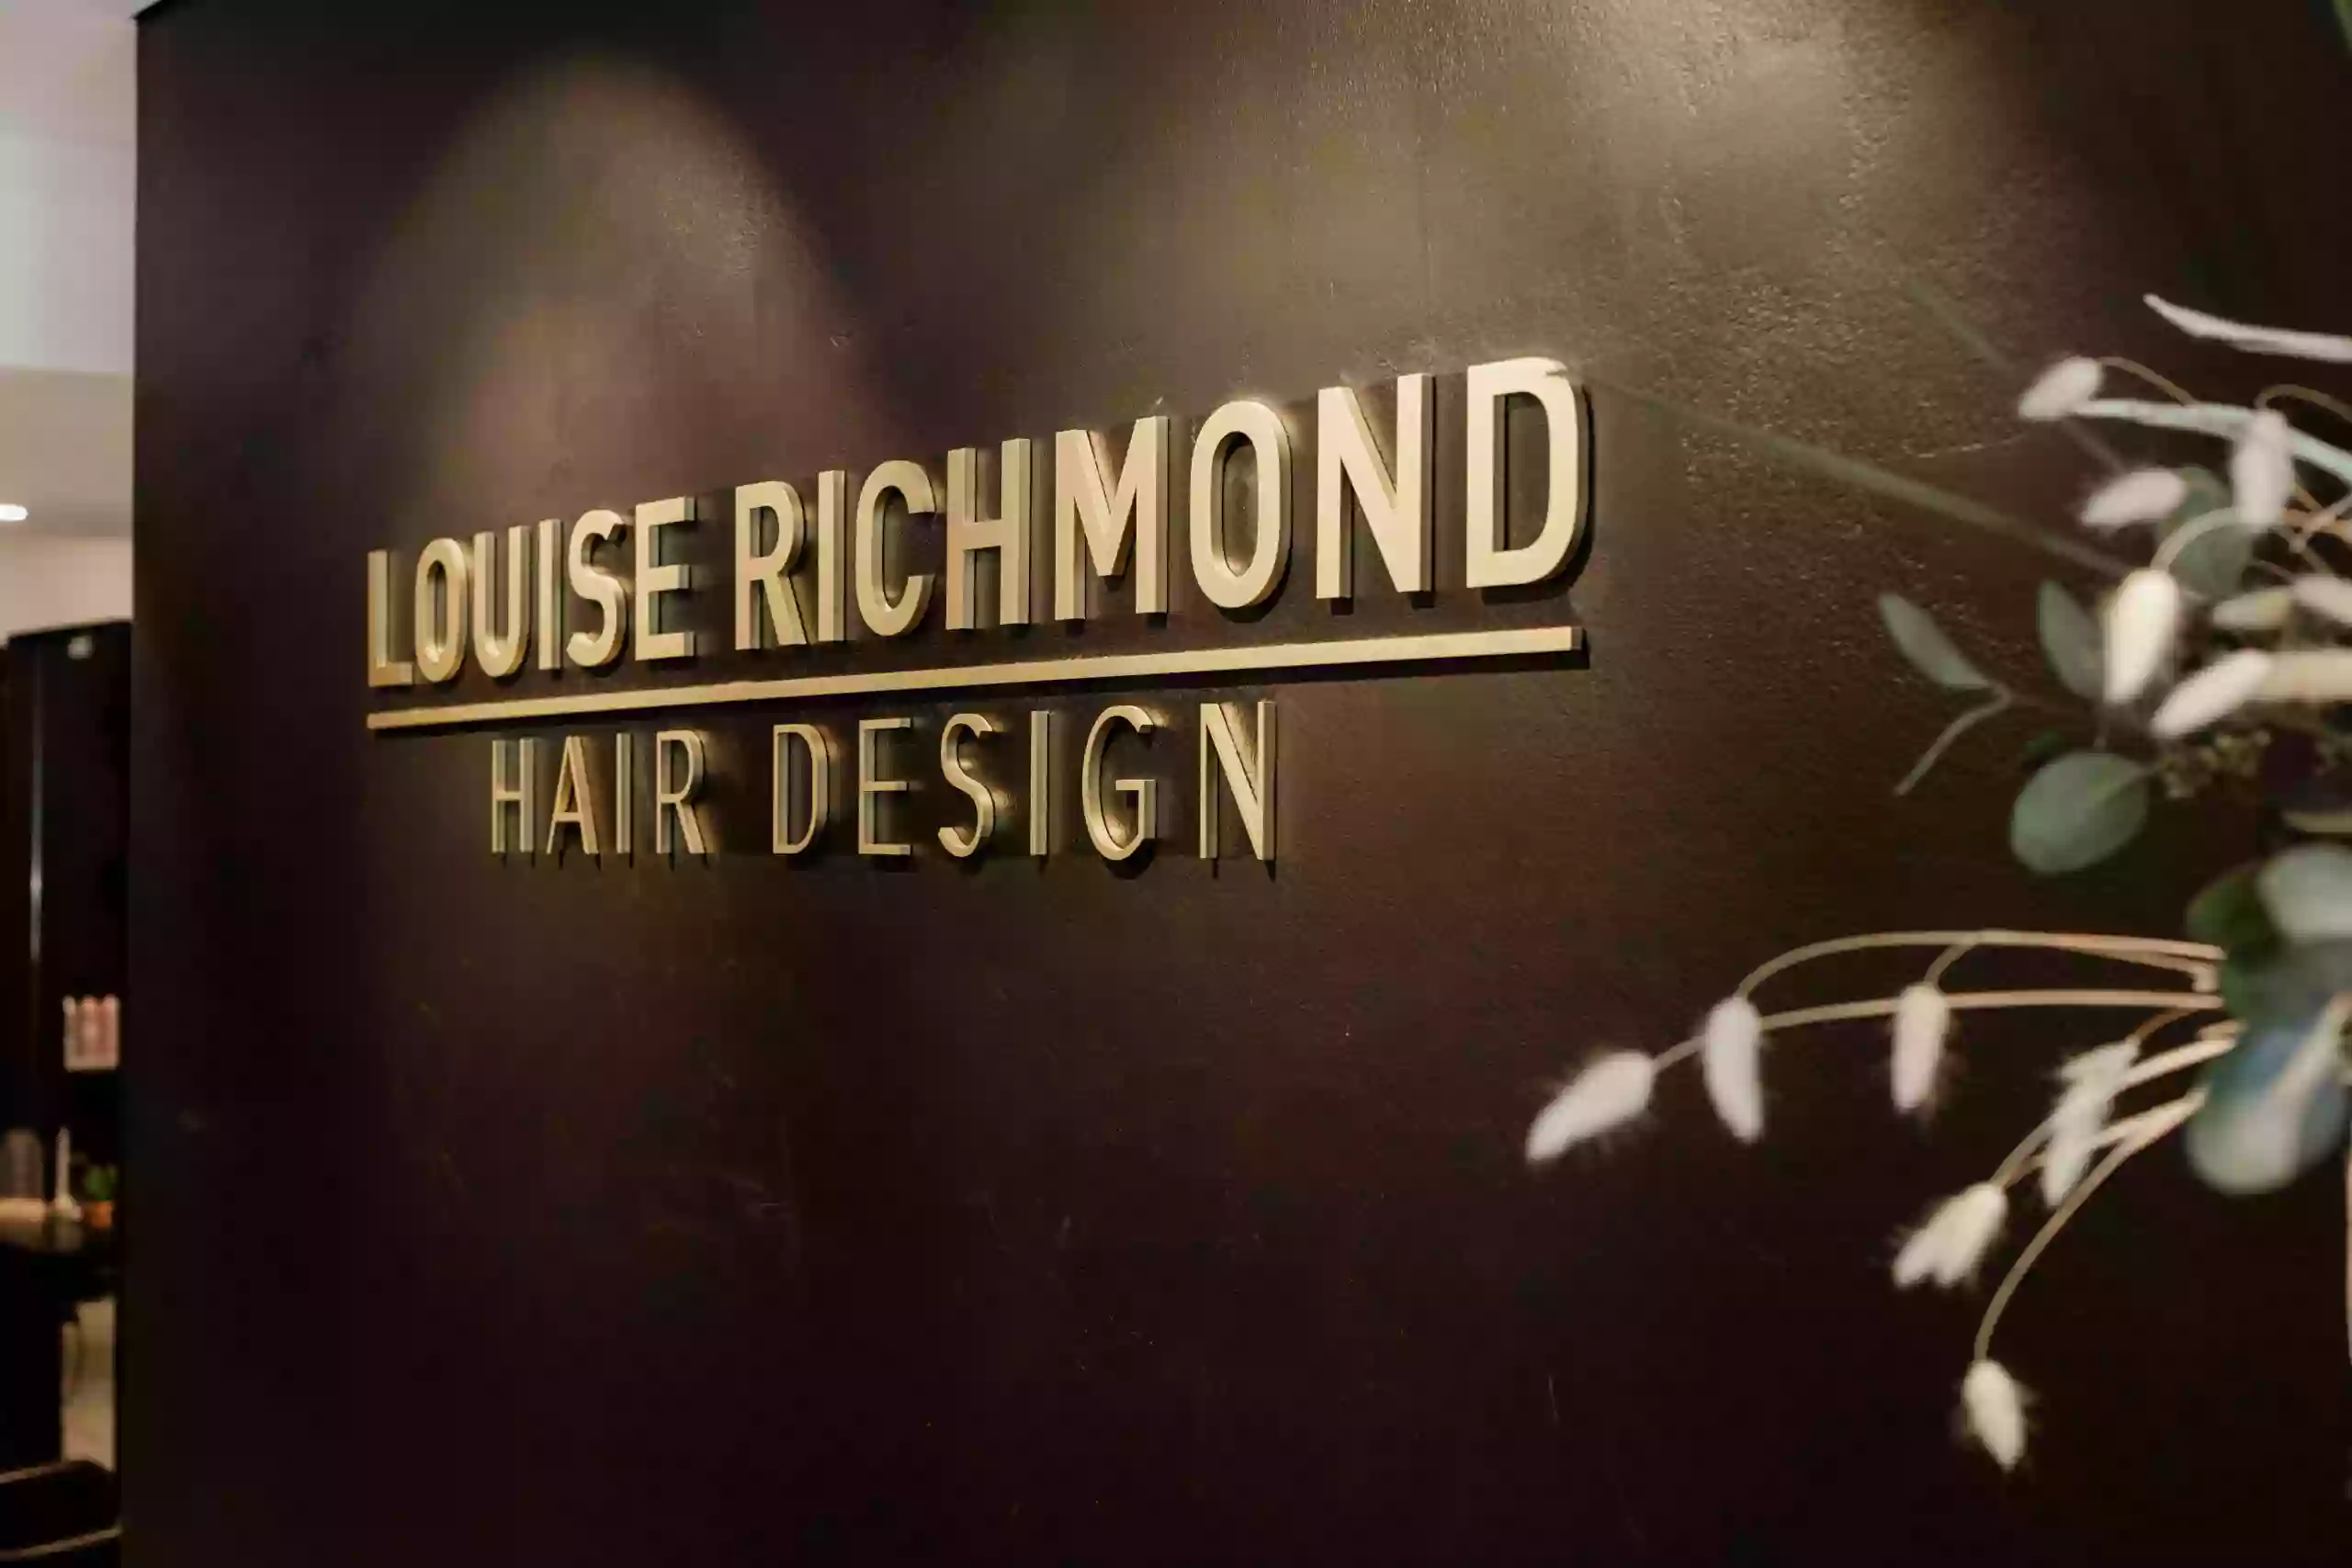 Louise Richmond Hair Design